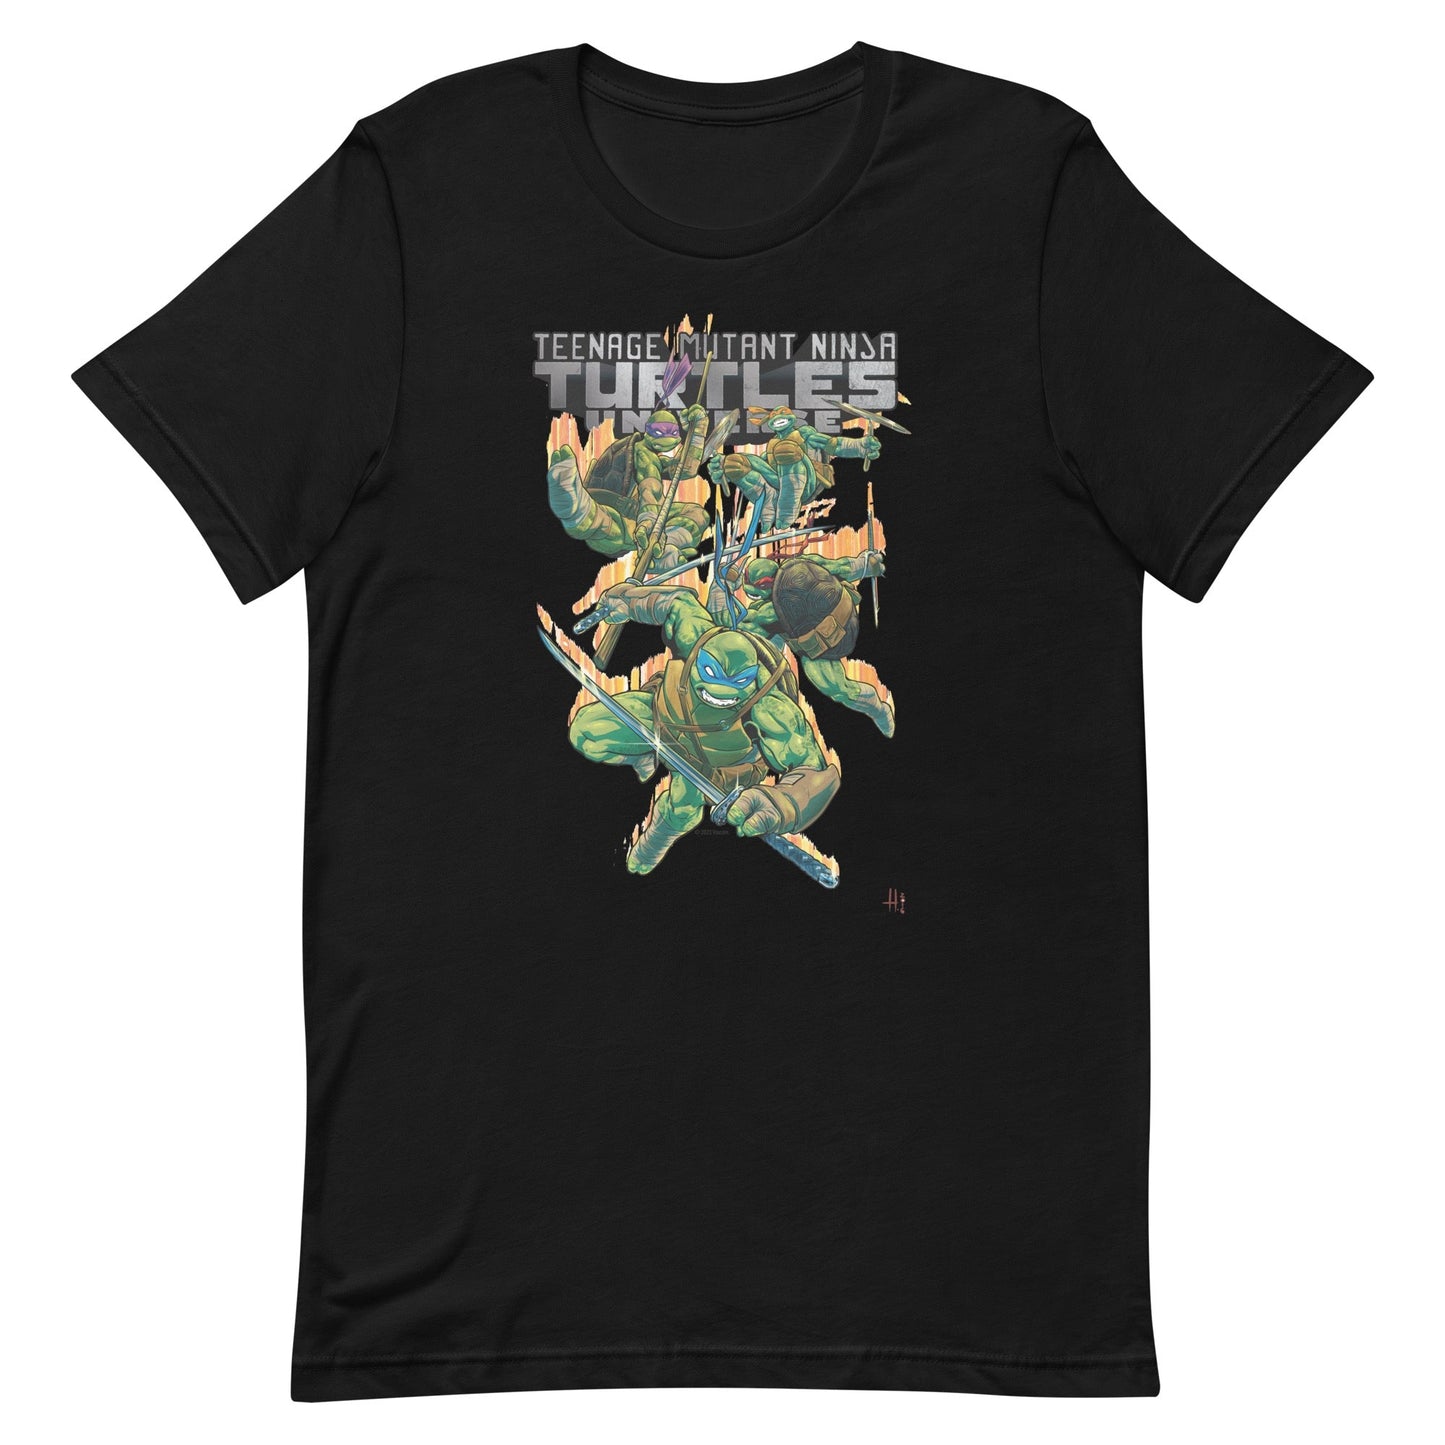 Teenage Mutant Ninja Turtles Adult Short Sleeve T - Shirt - Paramount Shop